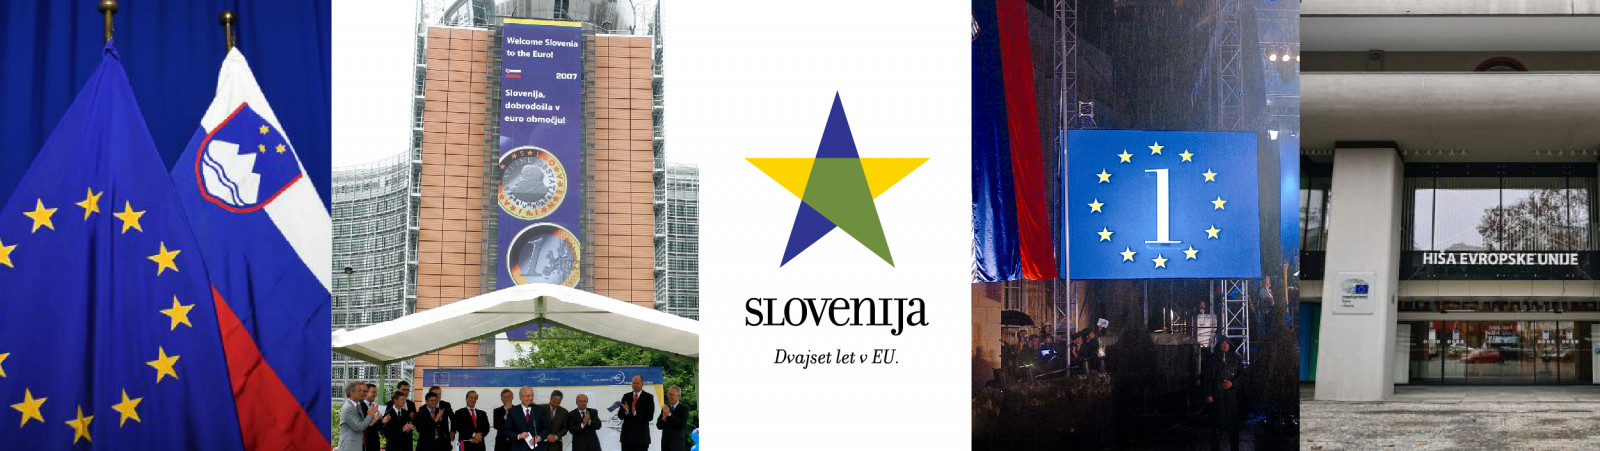 Kolaž fotografij: evropska in slovenska zastava, dobrodošlica Sloveniji leta 2007 ob vstopu v območje evra, zvezda z modrimi, rumenimi in zelenimi kraki in napisom Slovenija Dvajset let v EU, odštevanje do vstopa Slovenije v EU, pročelje zgradbe Hiša EU